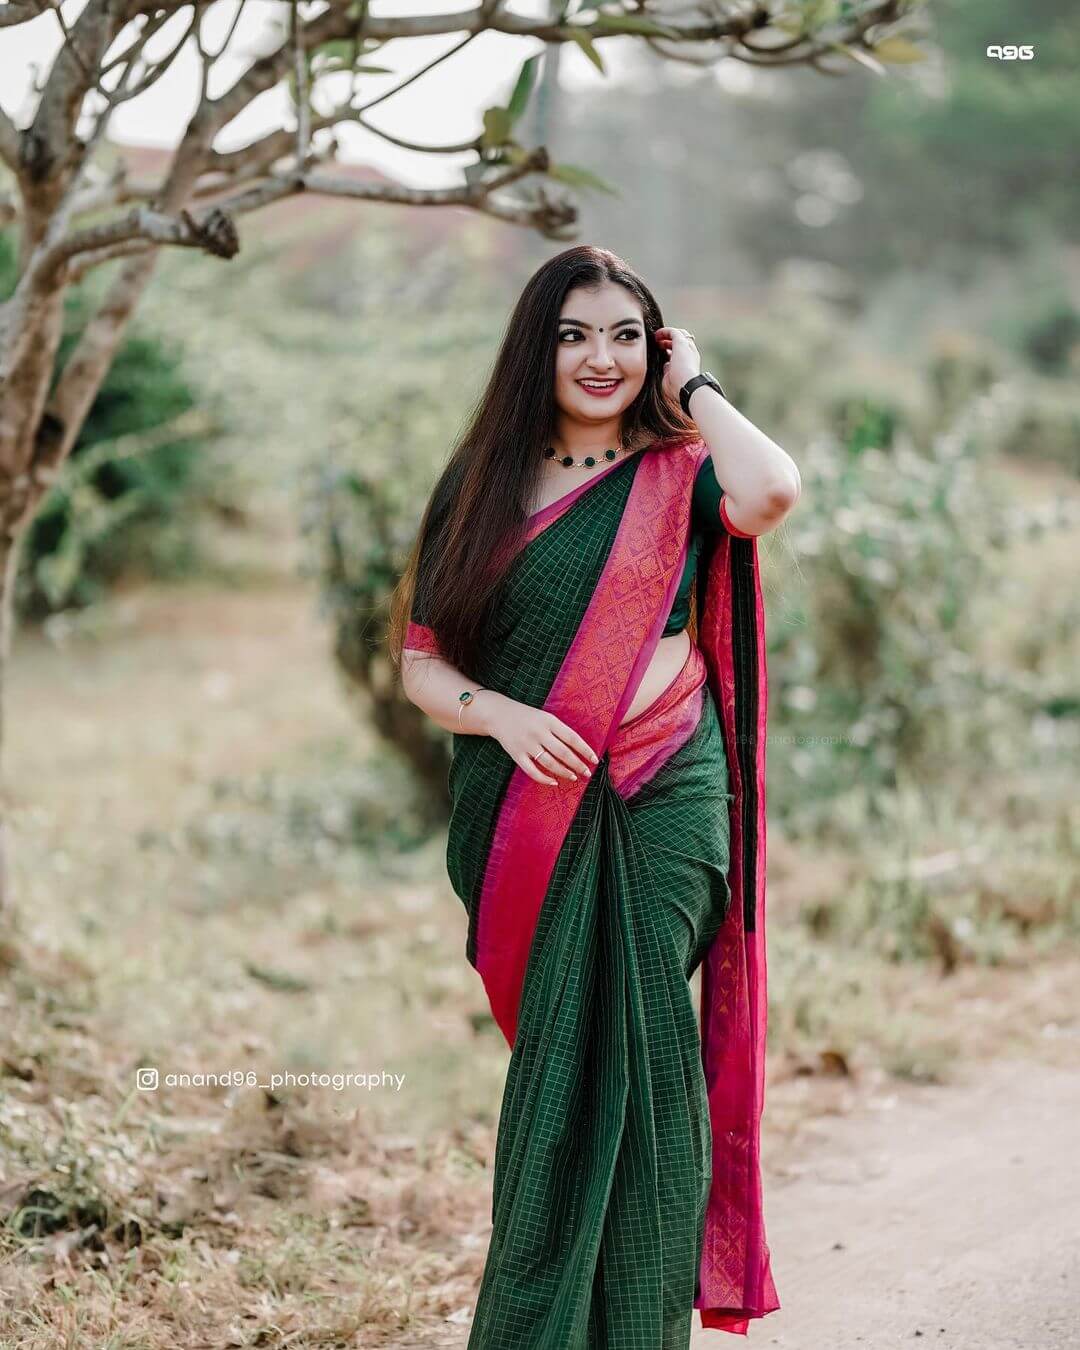 Malavika Nair Look Beautiful In Green Check Saree With Pink Border Malavika Nair Traditional Outfit And Looks